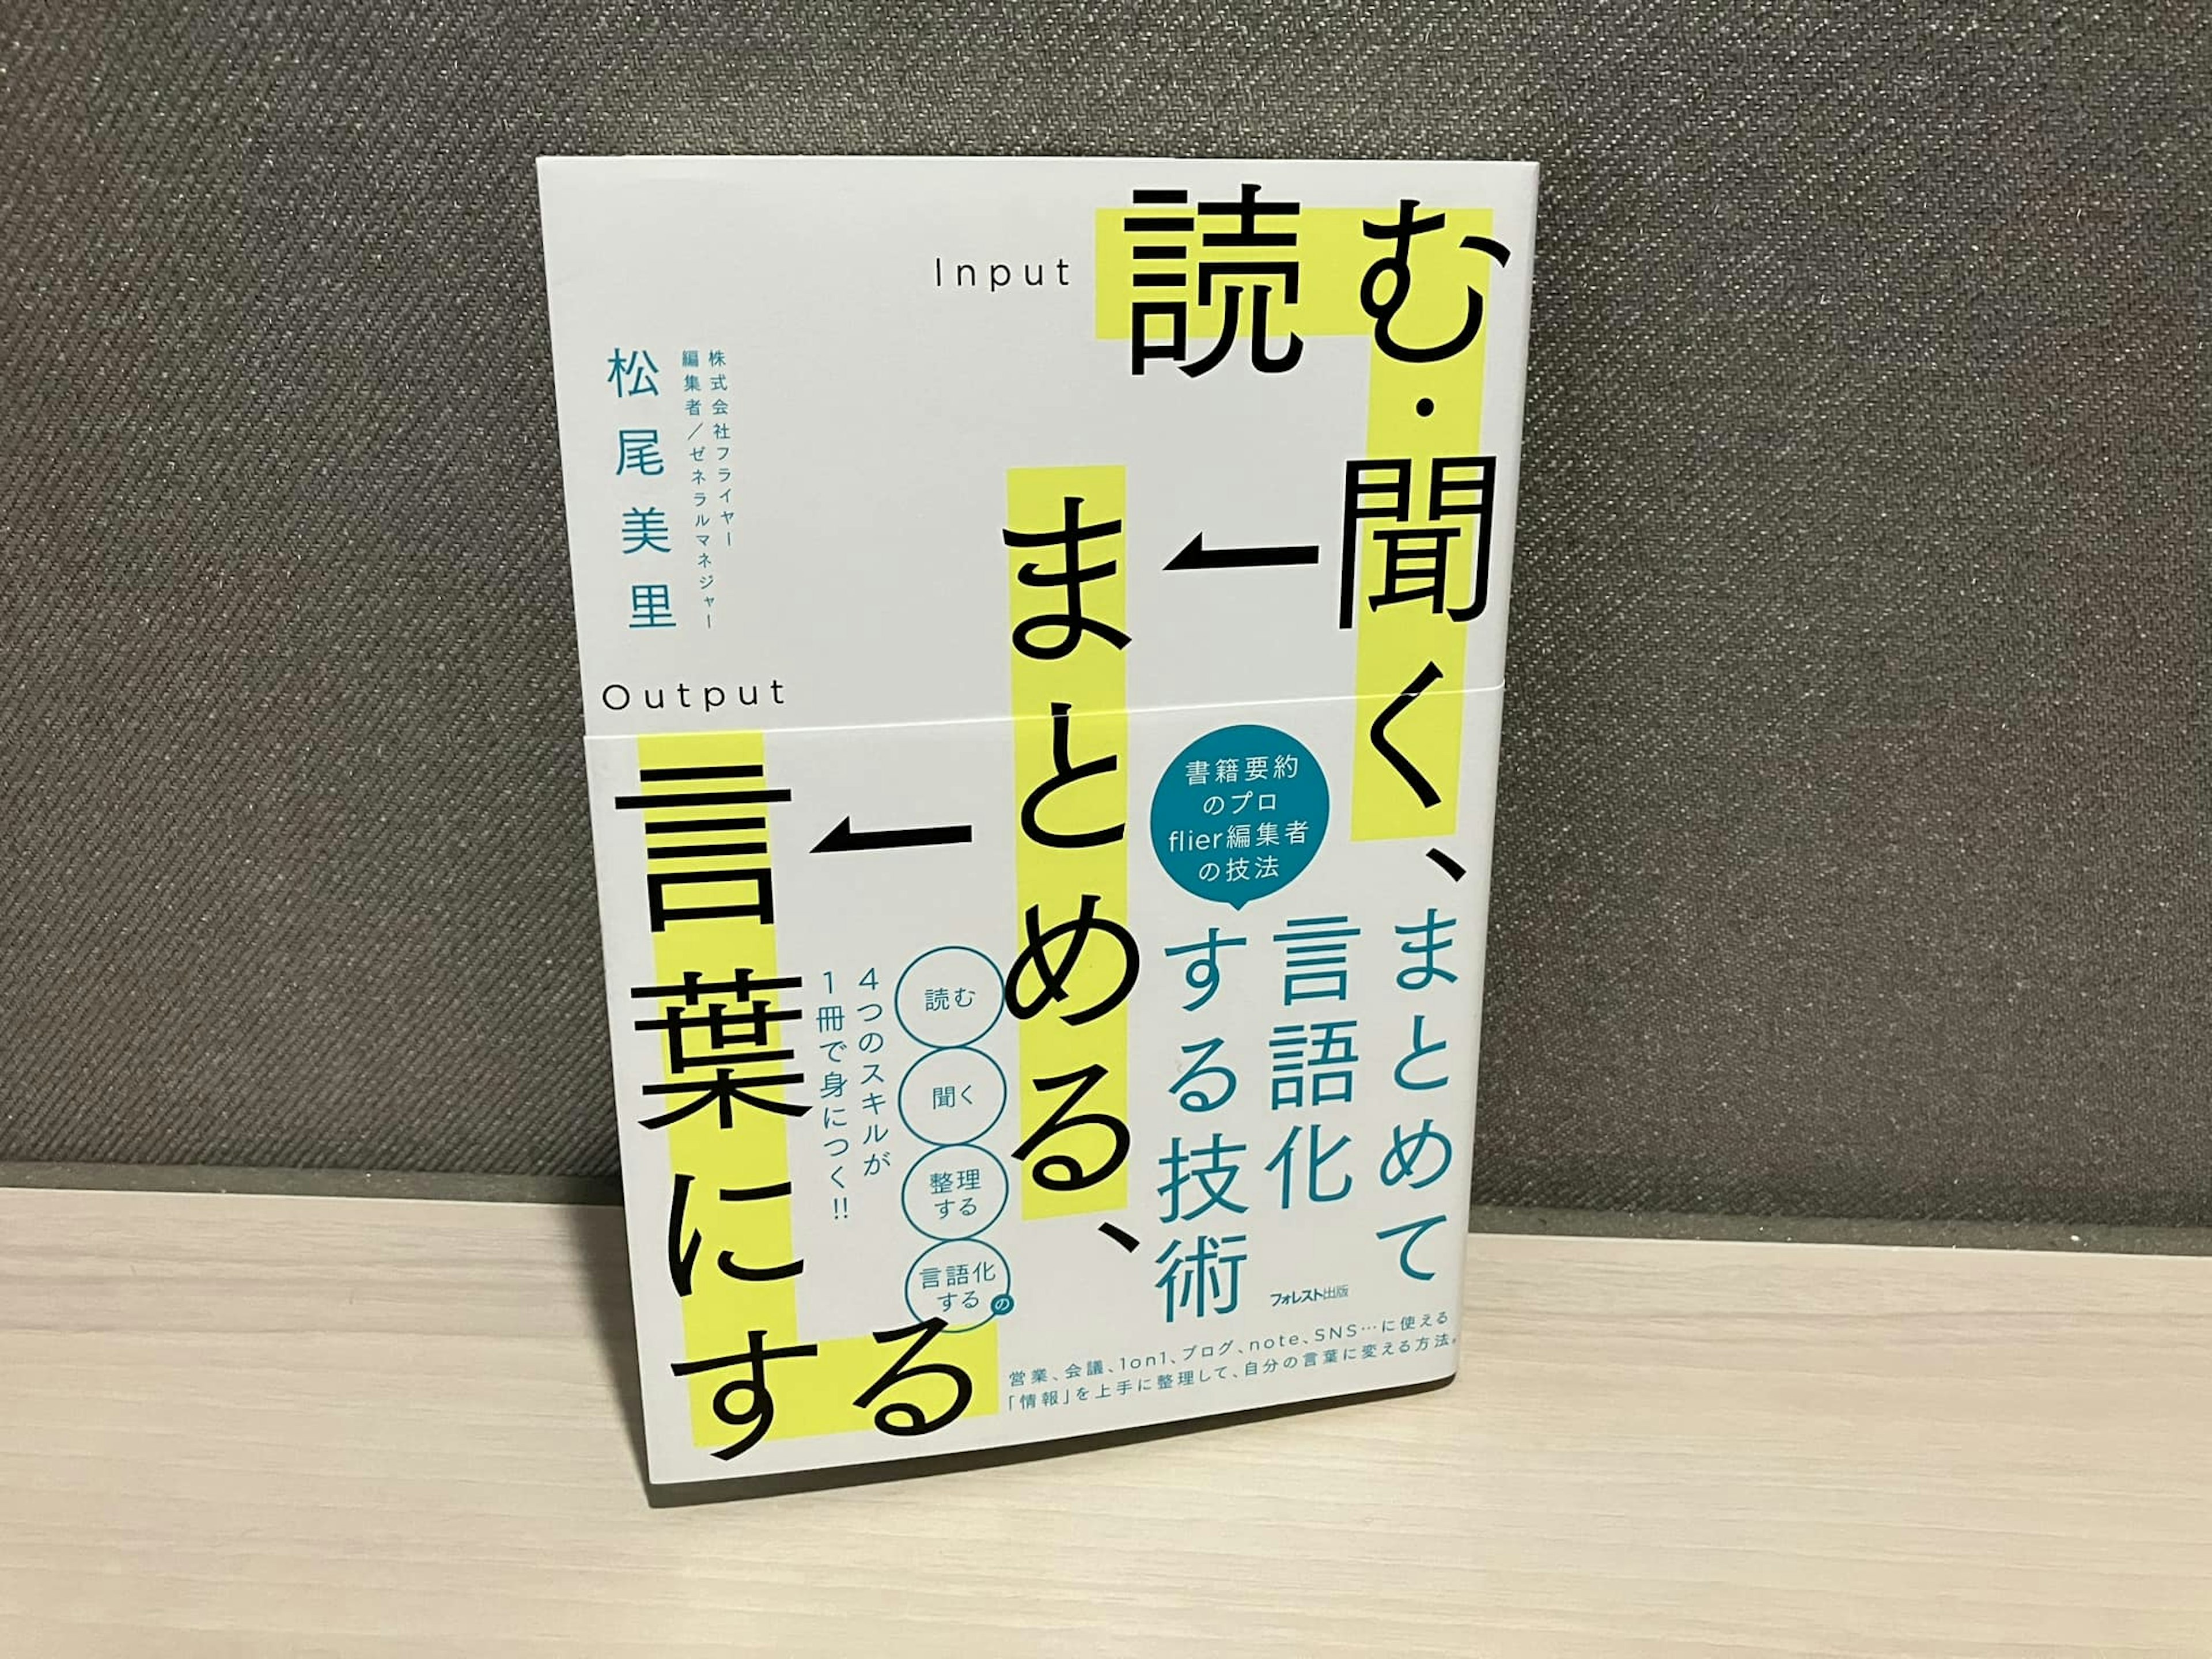 松尾美里「読む・聞く、まとめる、言葉にする」